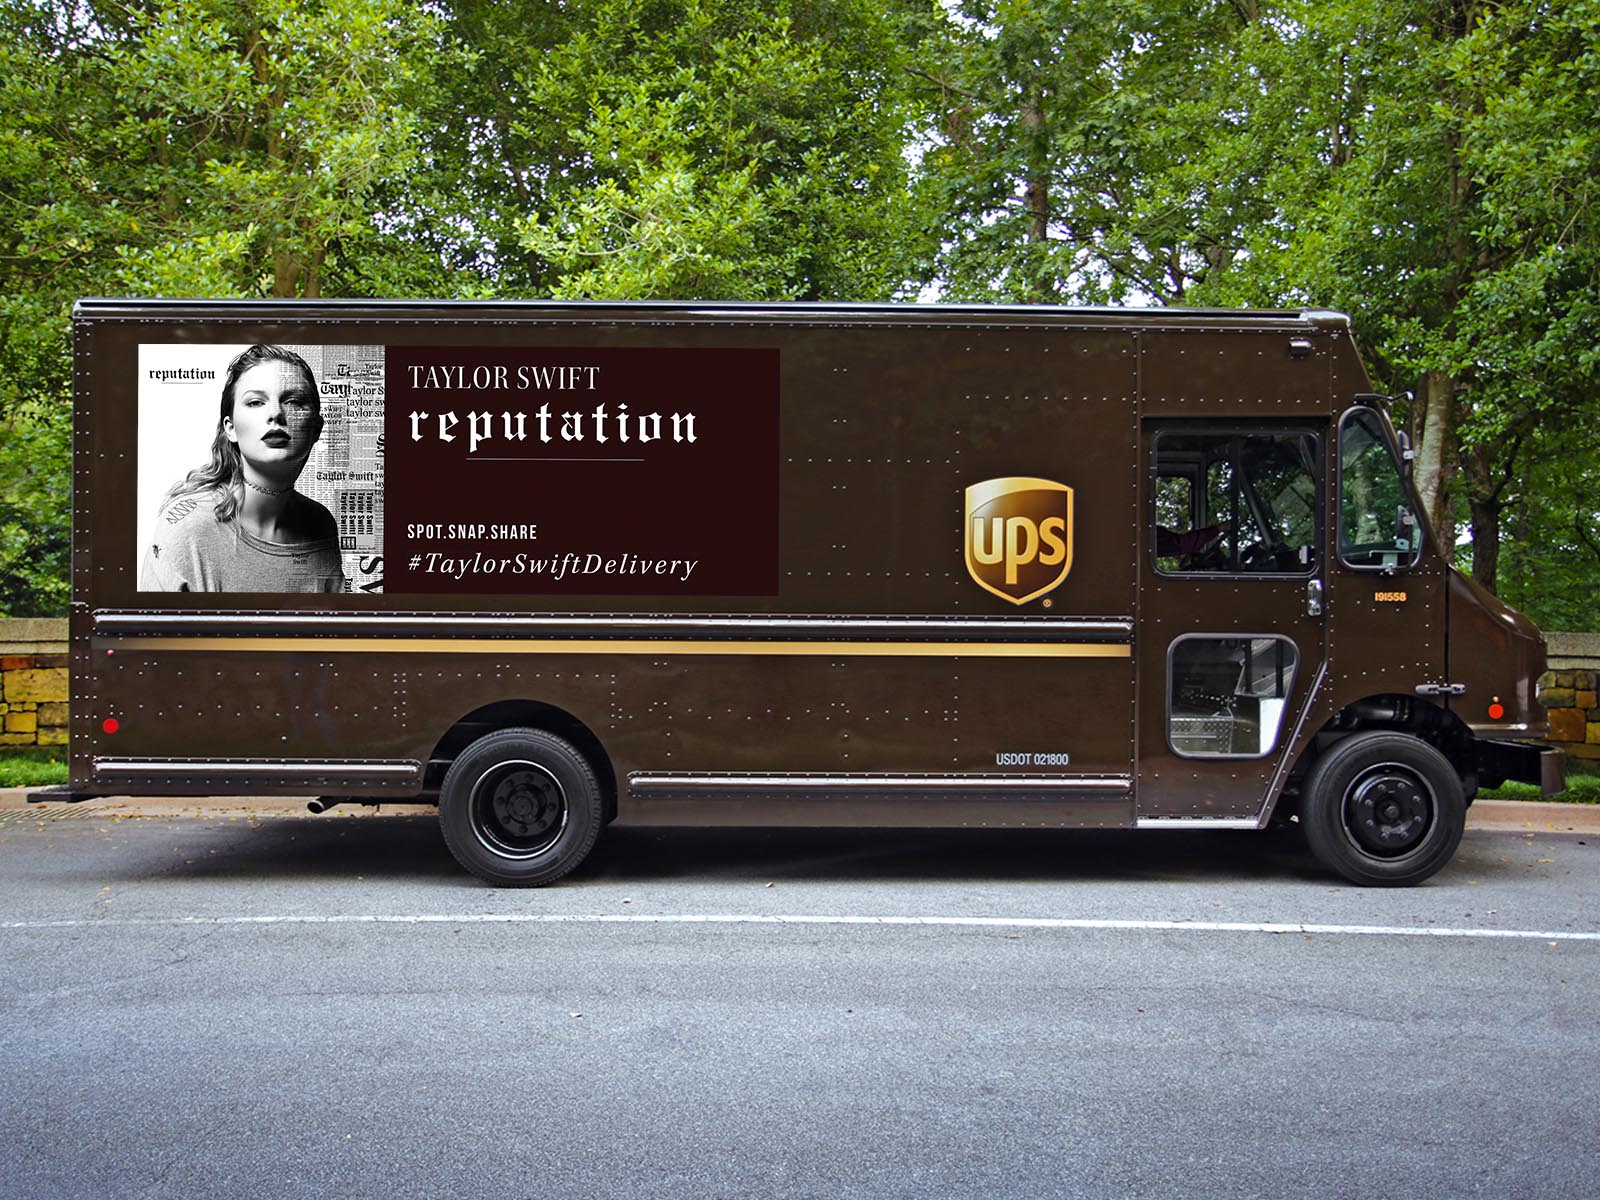 UPS ist weltweiter Logistikpartner für das 6. Taylor Swift-Album